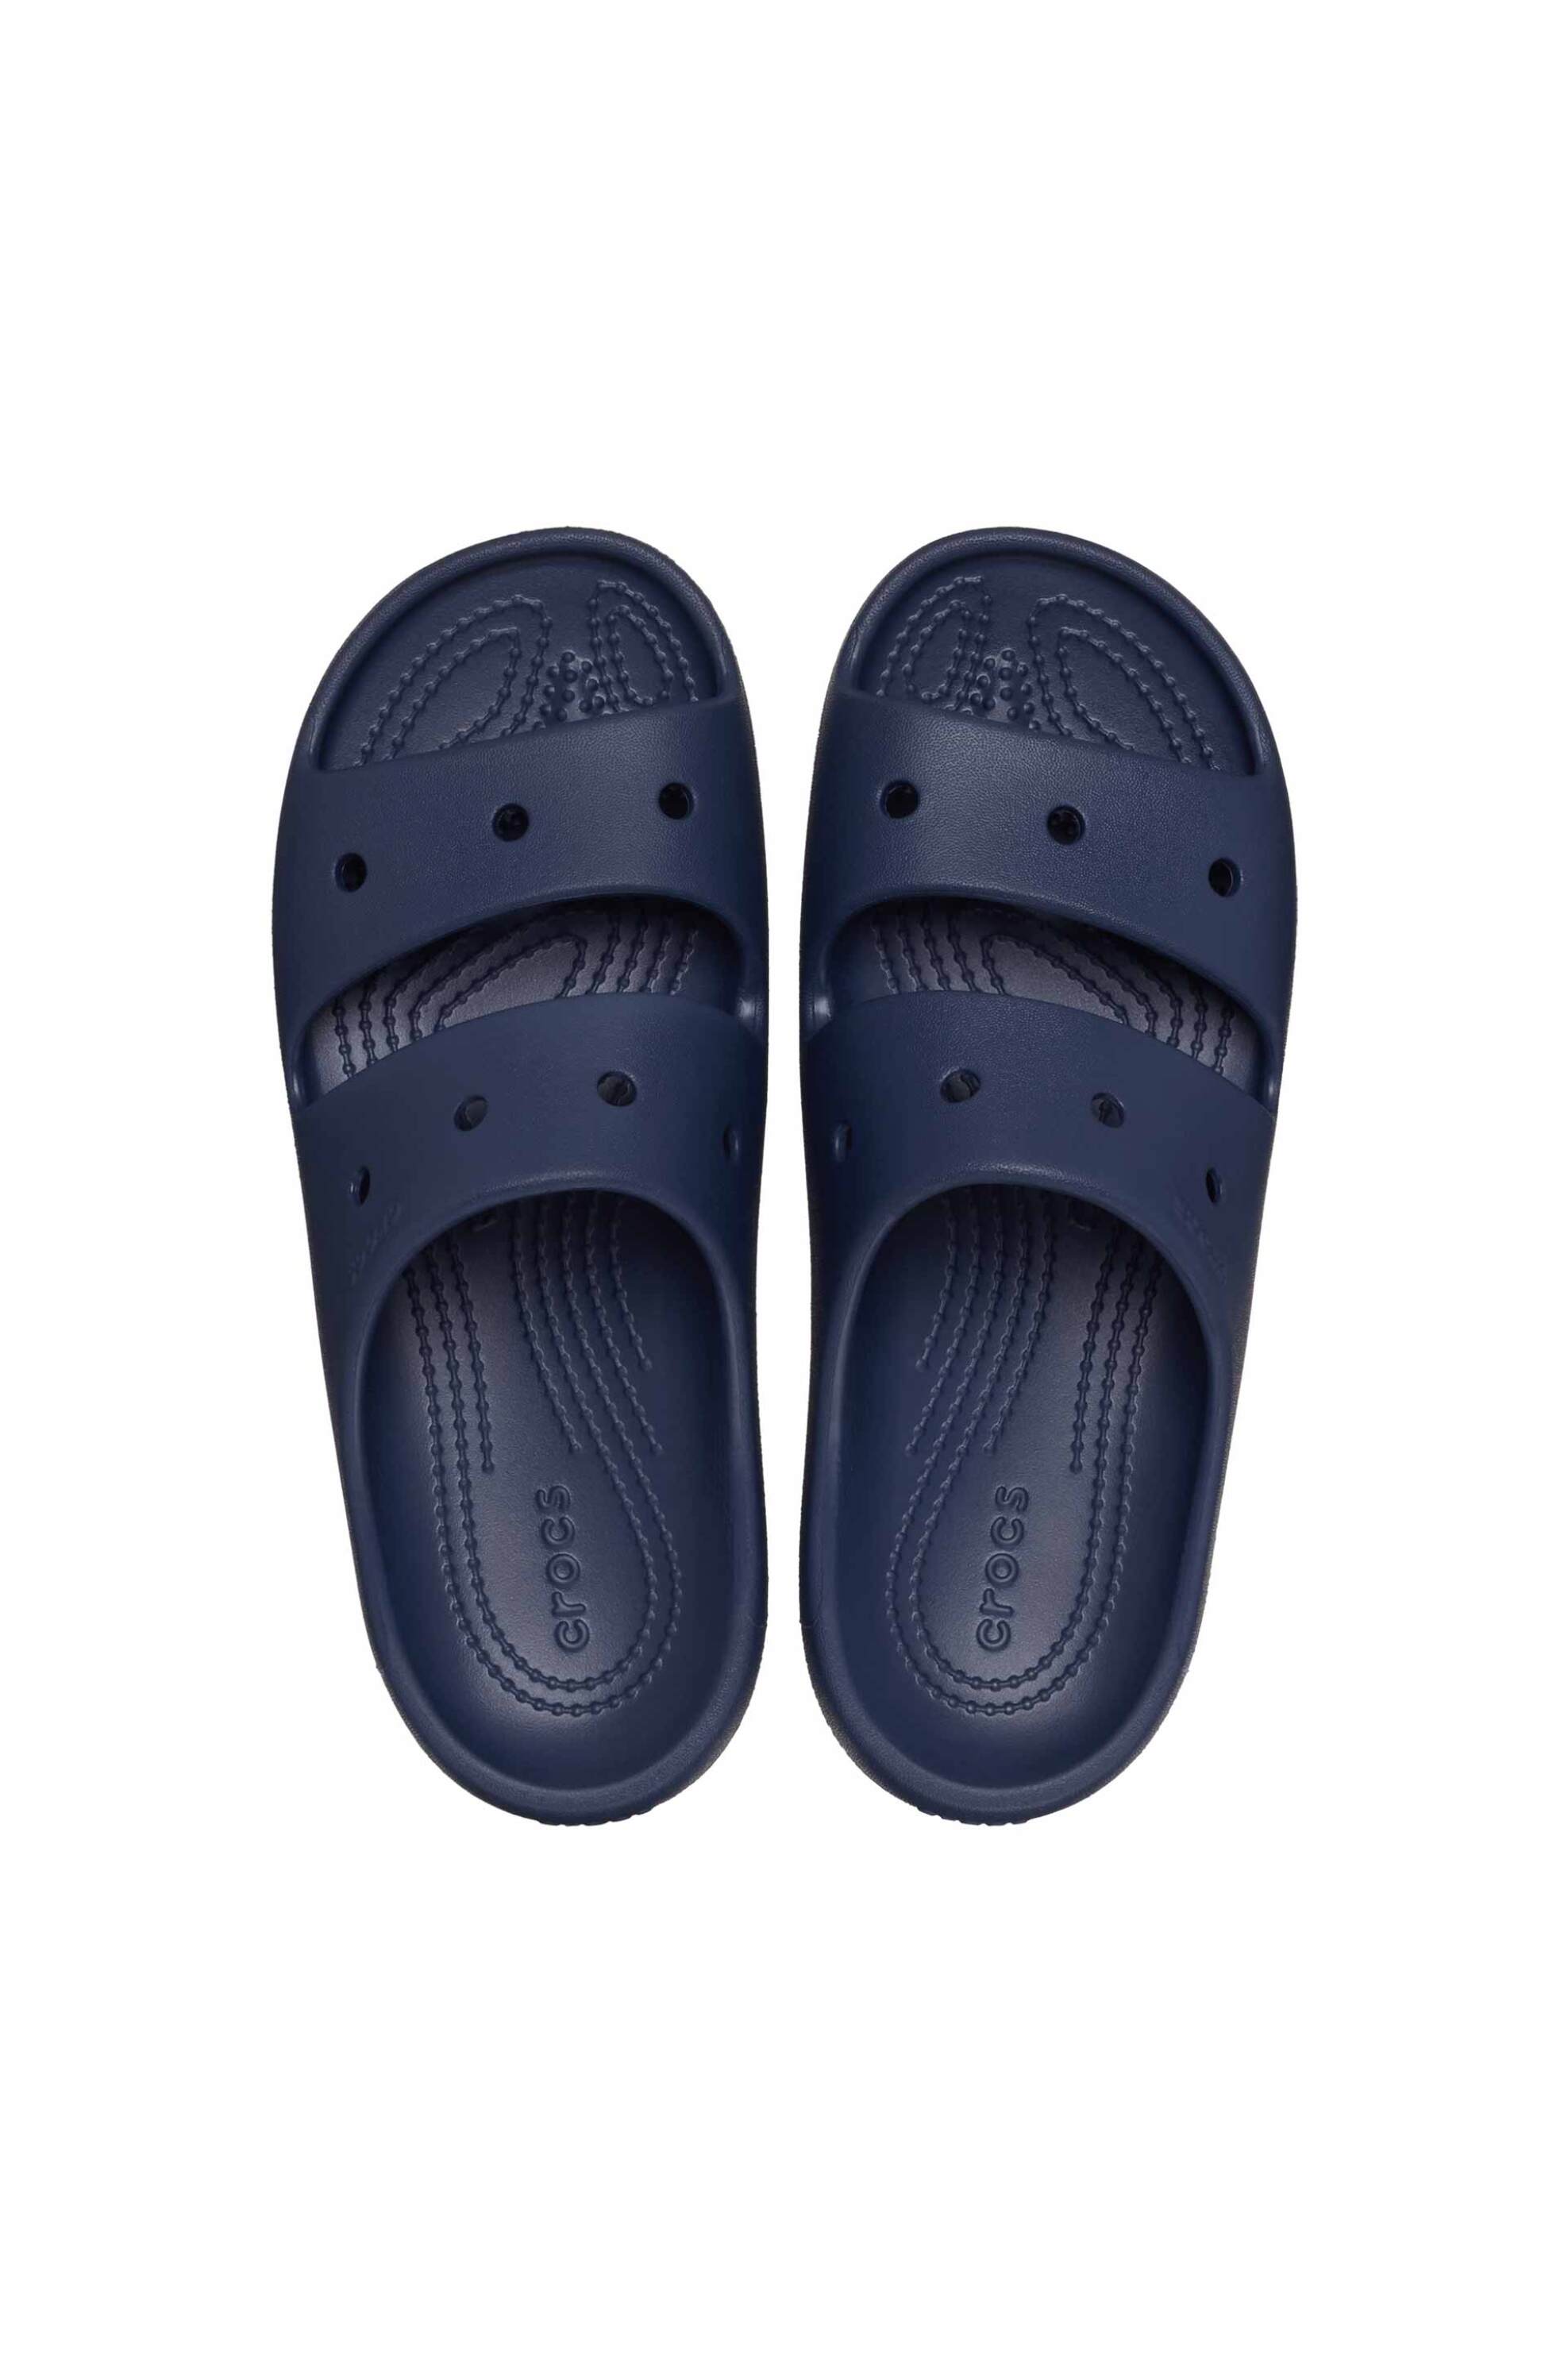 Ανδρική Μόδα > Ανδρικά Παπούτσια > Ανδρικές Παντόφλες & Σαγιονάρες Crocs unisex σαγιονάρες "Classic Sandal 2.0" - E61131 Μπλε Σκούρο